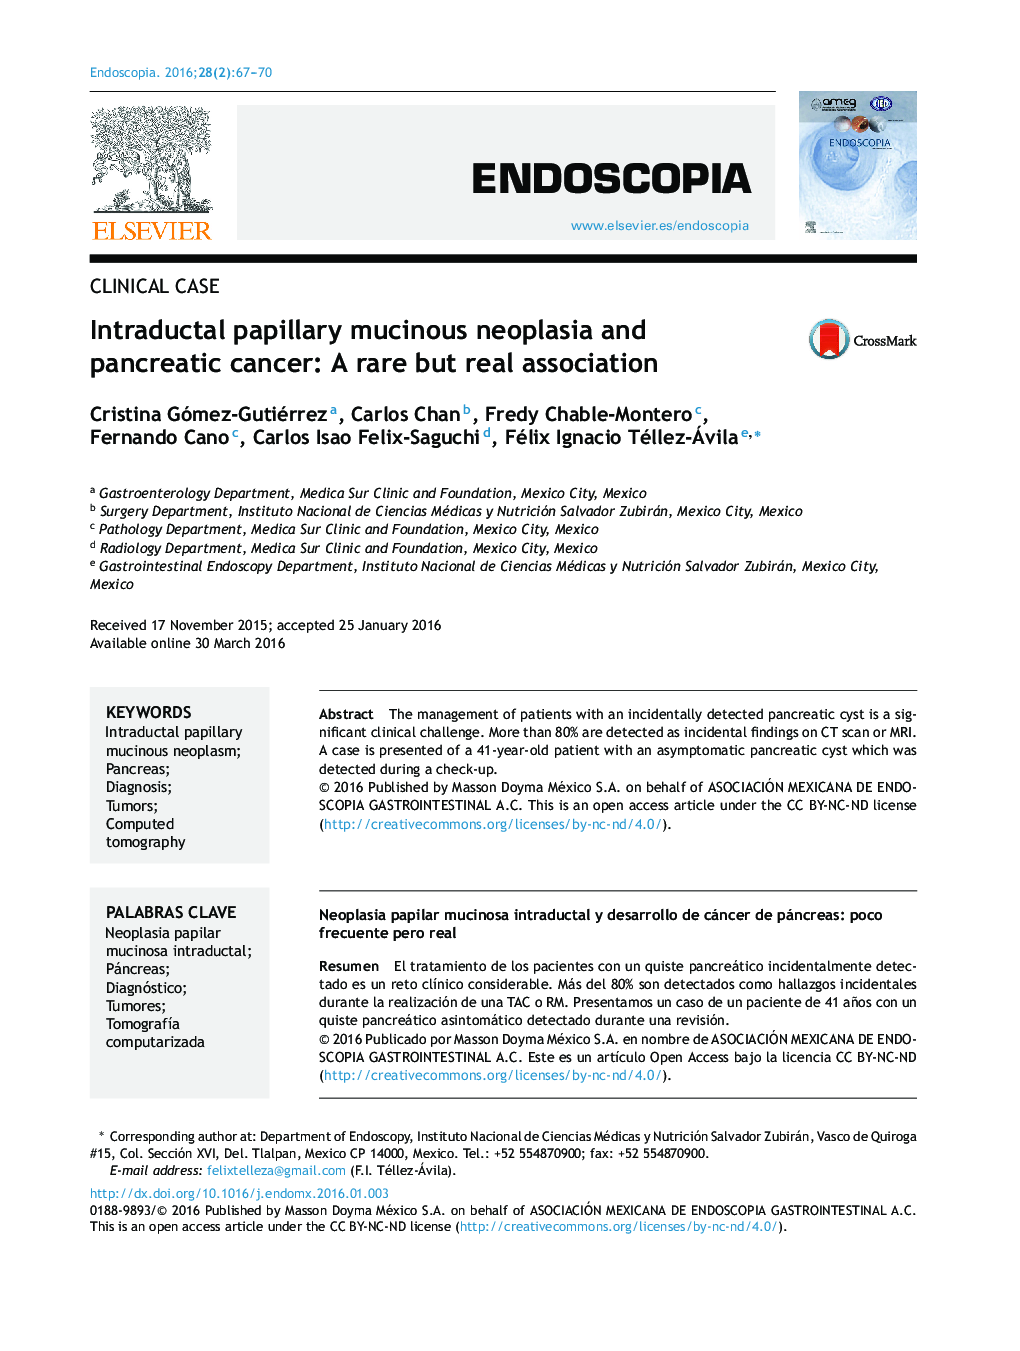 نئوپلازی موسینوس پاپیلاری داخل مجاری و سرطان پانکراس: ارتباط نادر اما واقعی